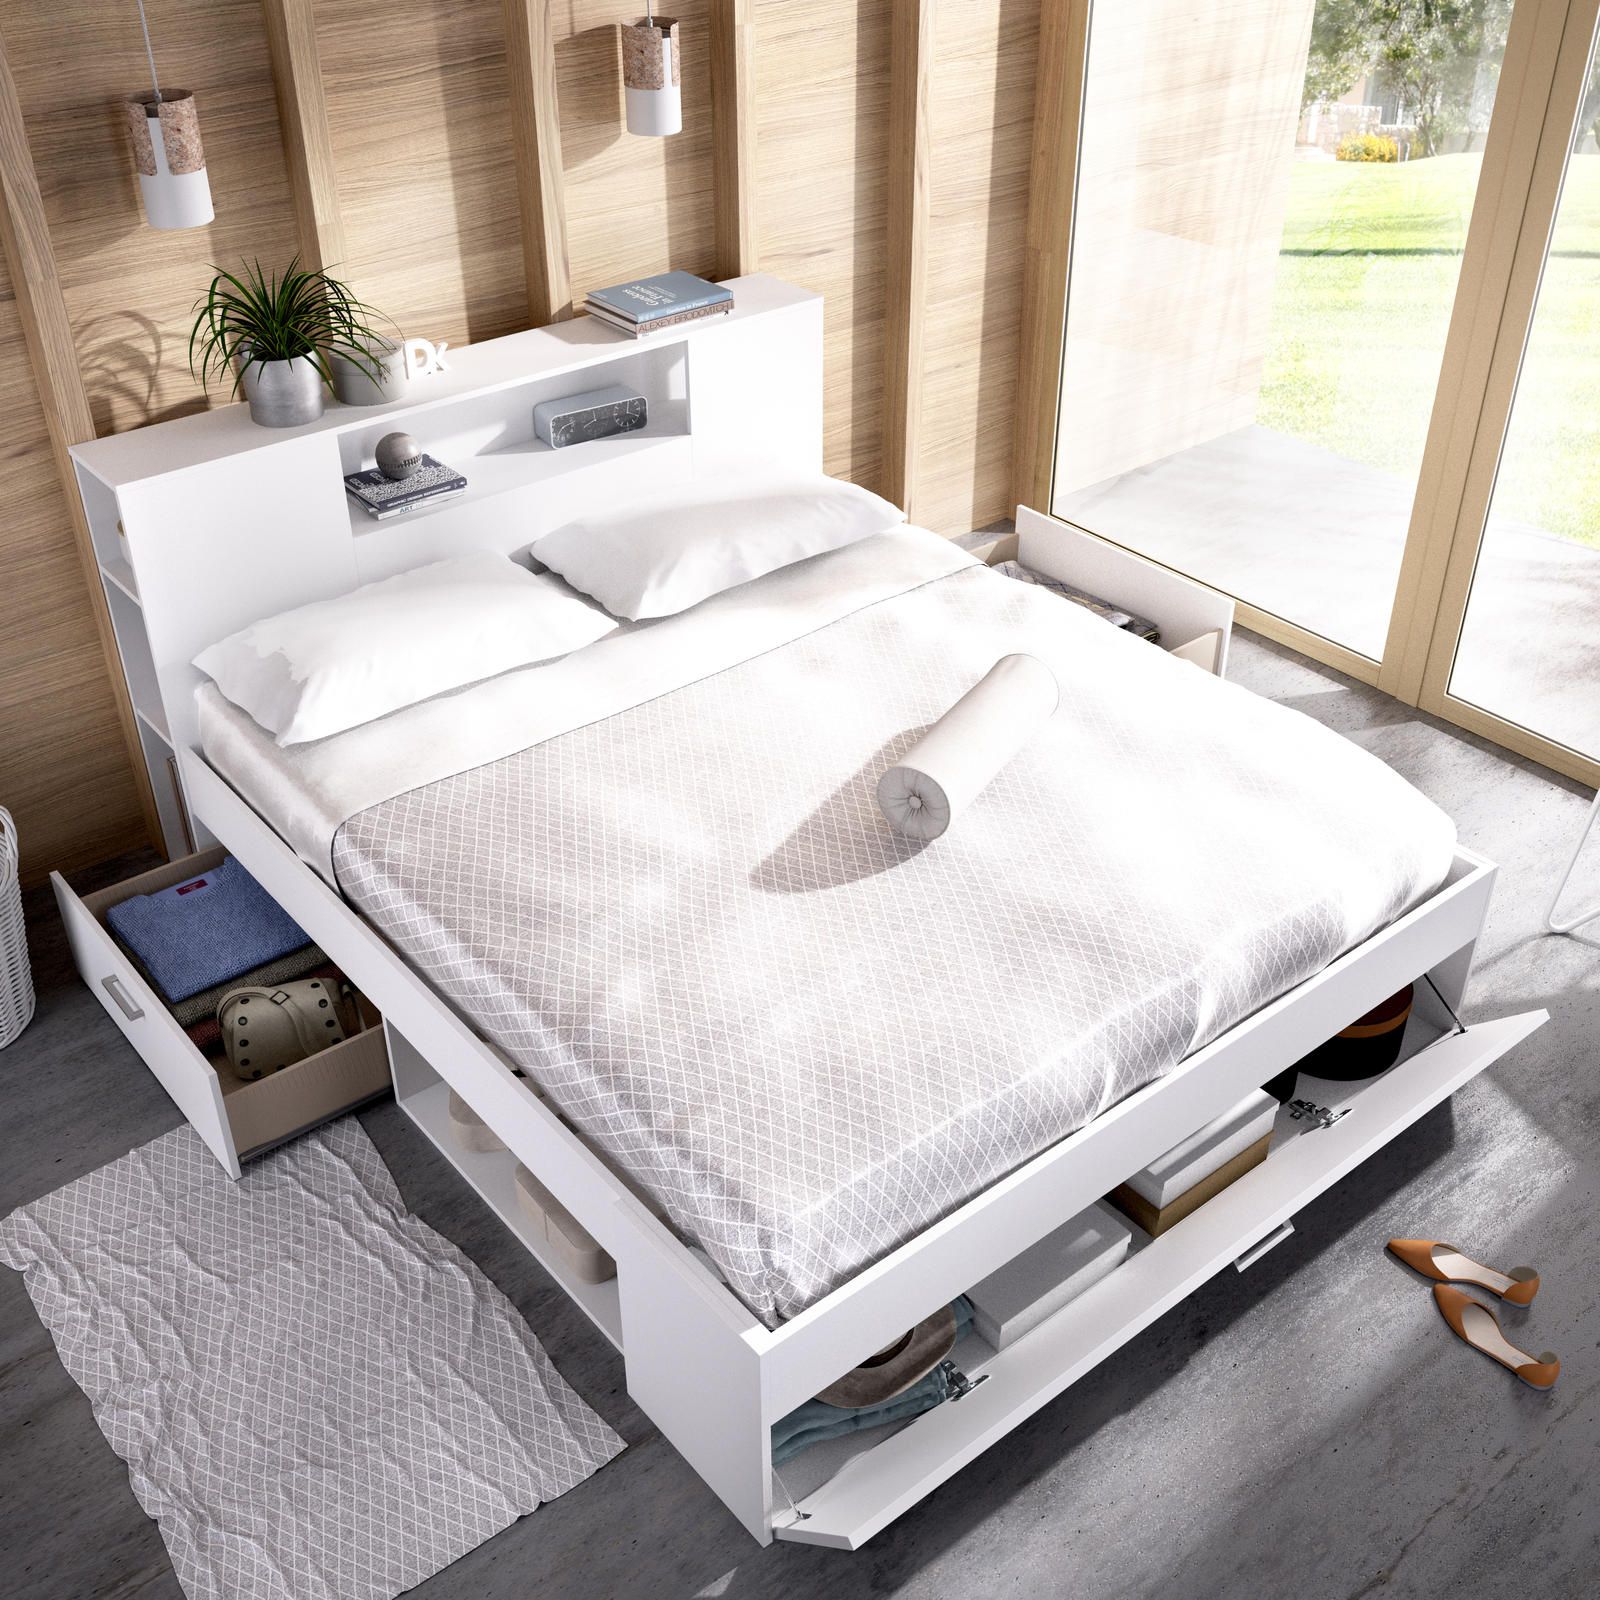 Aldo Manželská postel s úložným prostorem Lanka white - Nábytek ALDO